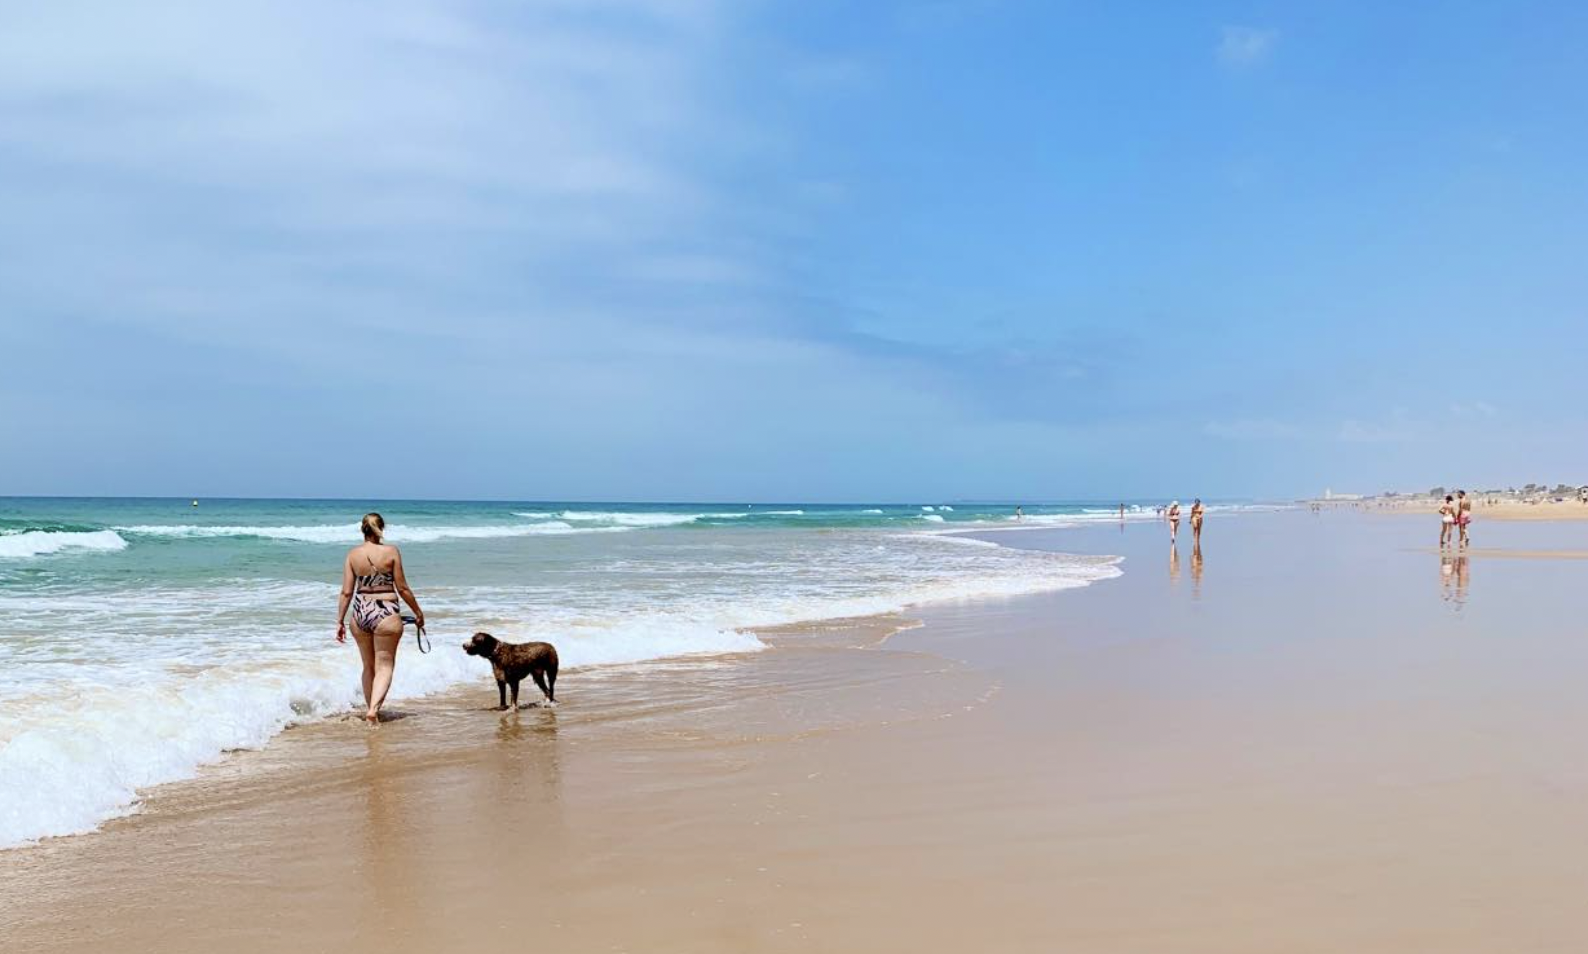 Matrona Golpe fuerte Solenoide 4 playas 'pet friendly' para disfrutar con las mascotas en la provincia de  Cádiz